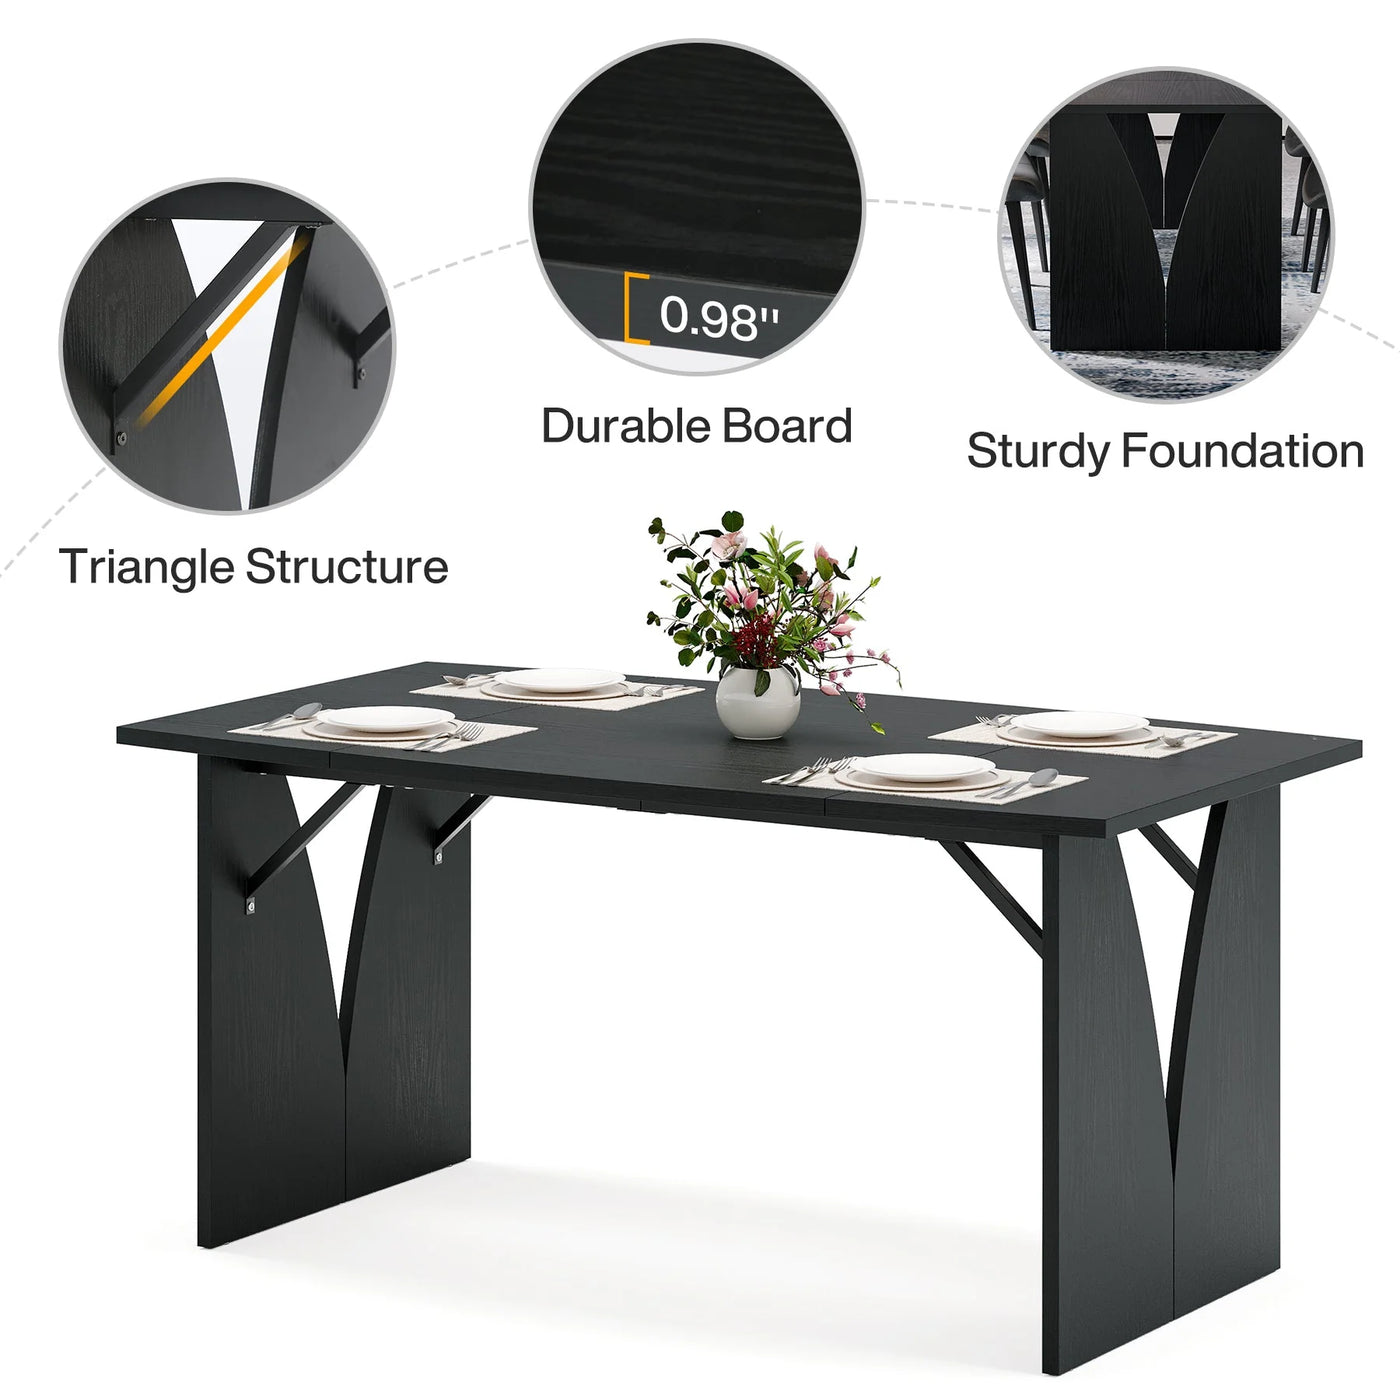 Celine Black Dining Table | Modern Rectangular Wooden Kitchen Table for 4-6